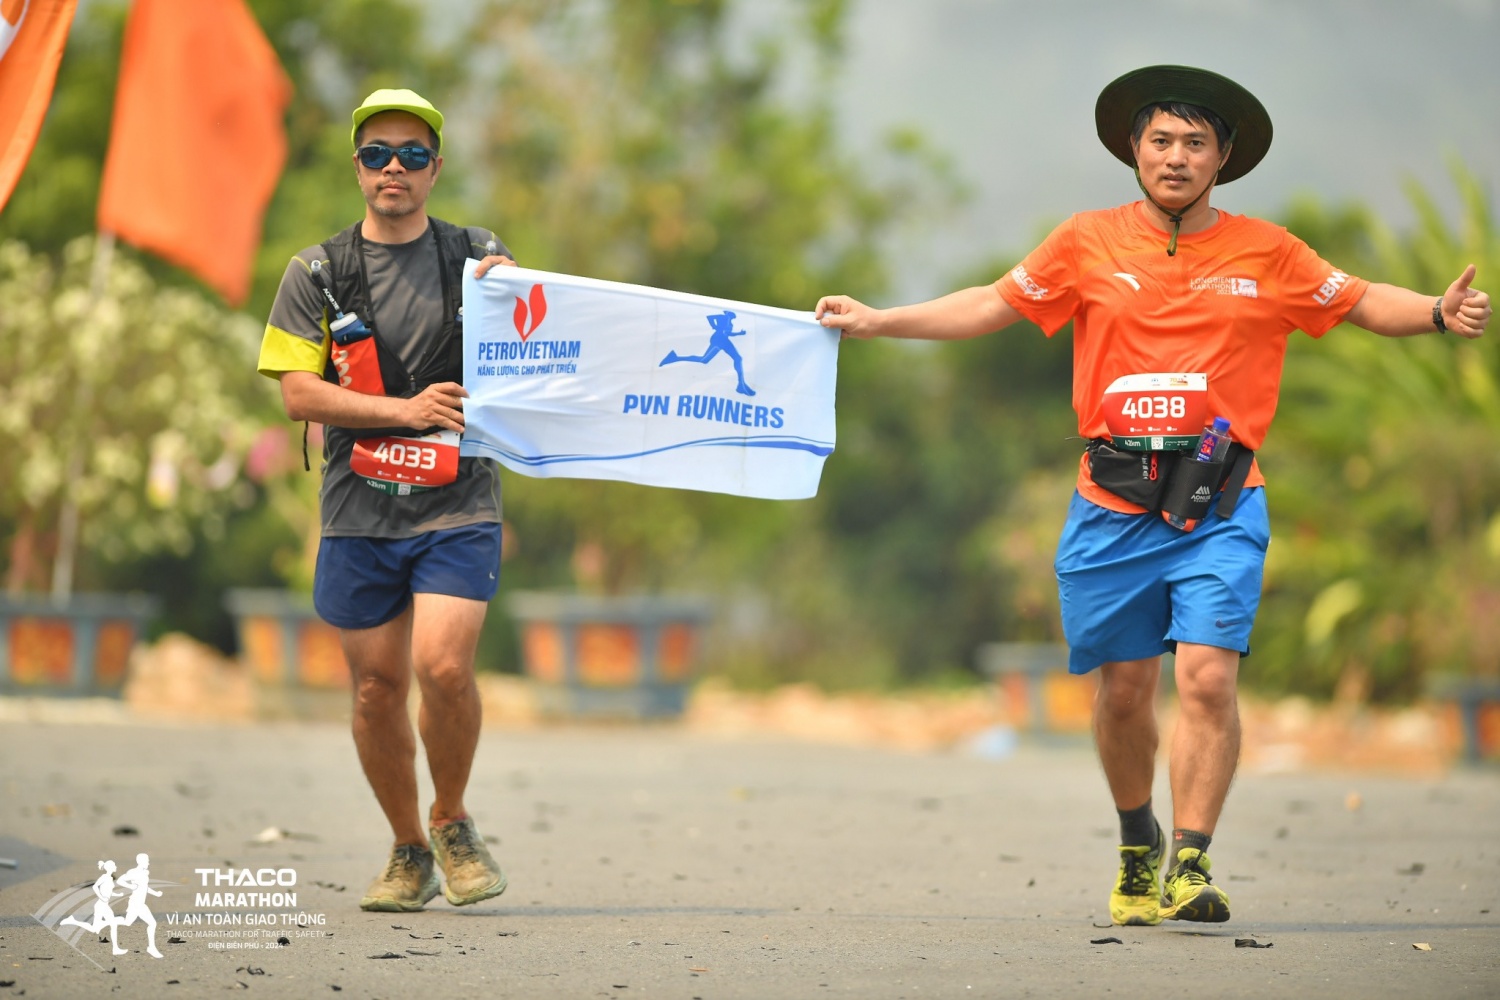 Petrovietnam đồng hành cùng giải chạy THACO Marathon vì ATGT - Điện Biên Phủ- Ảnh 5.